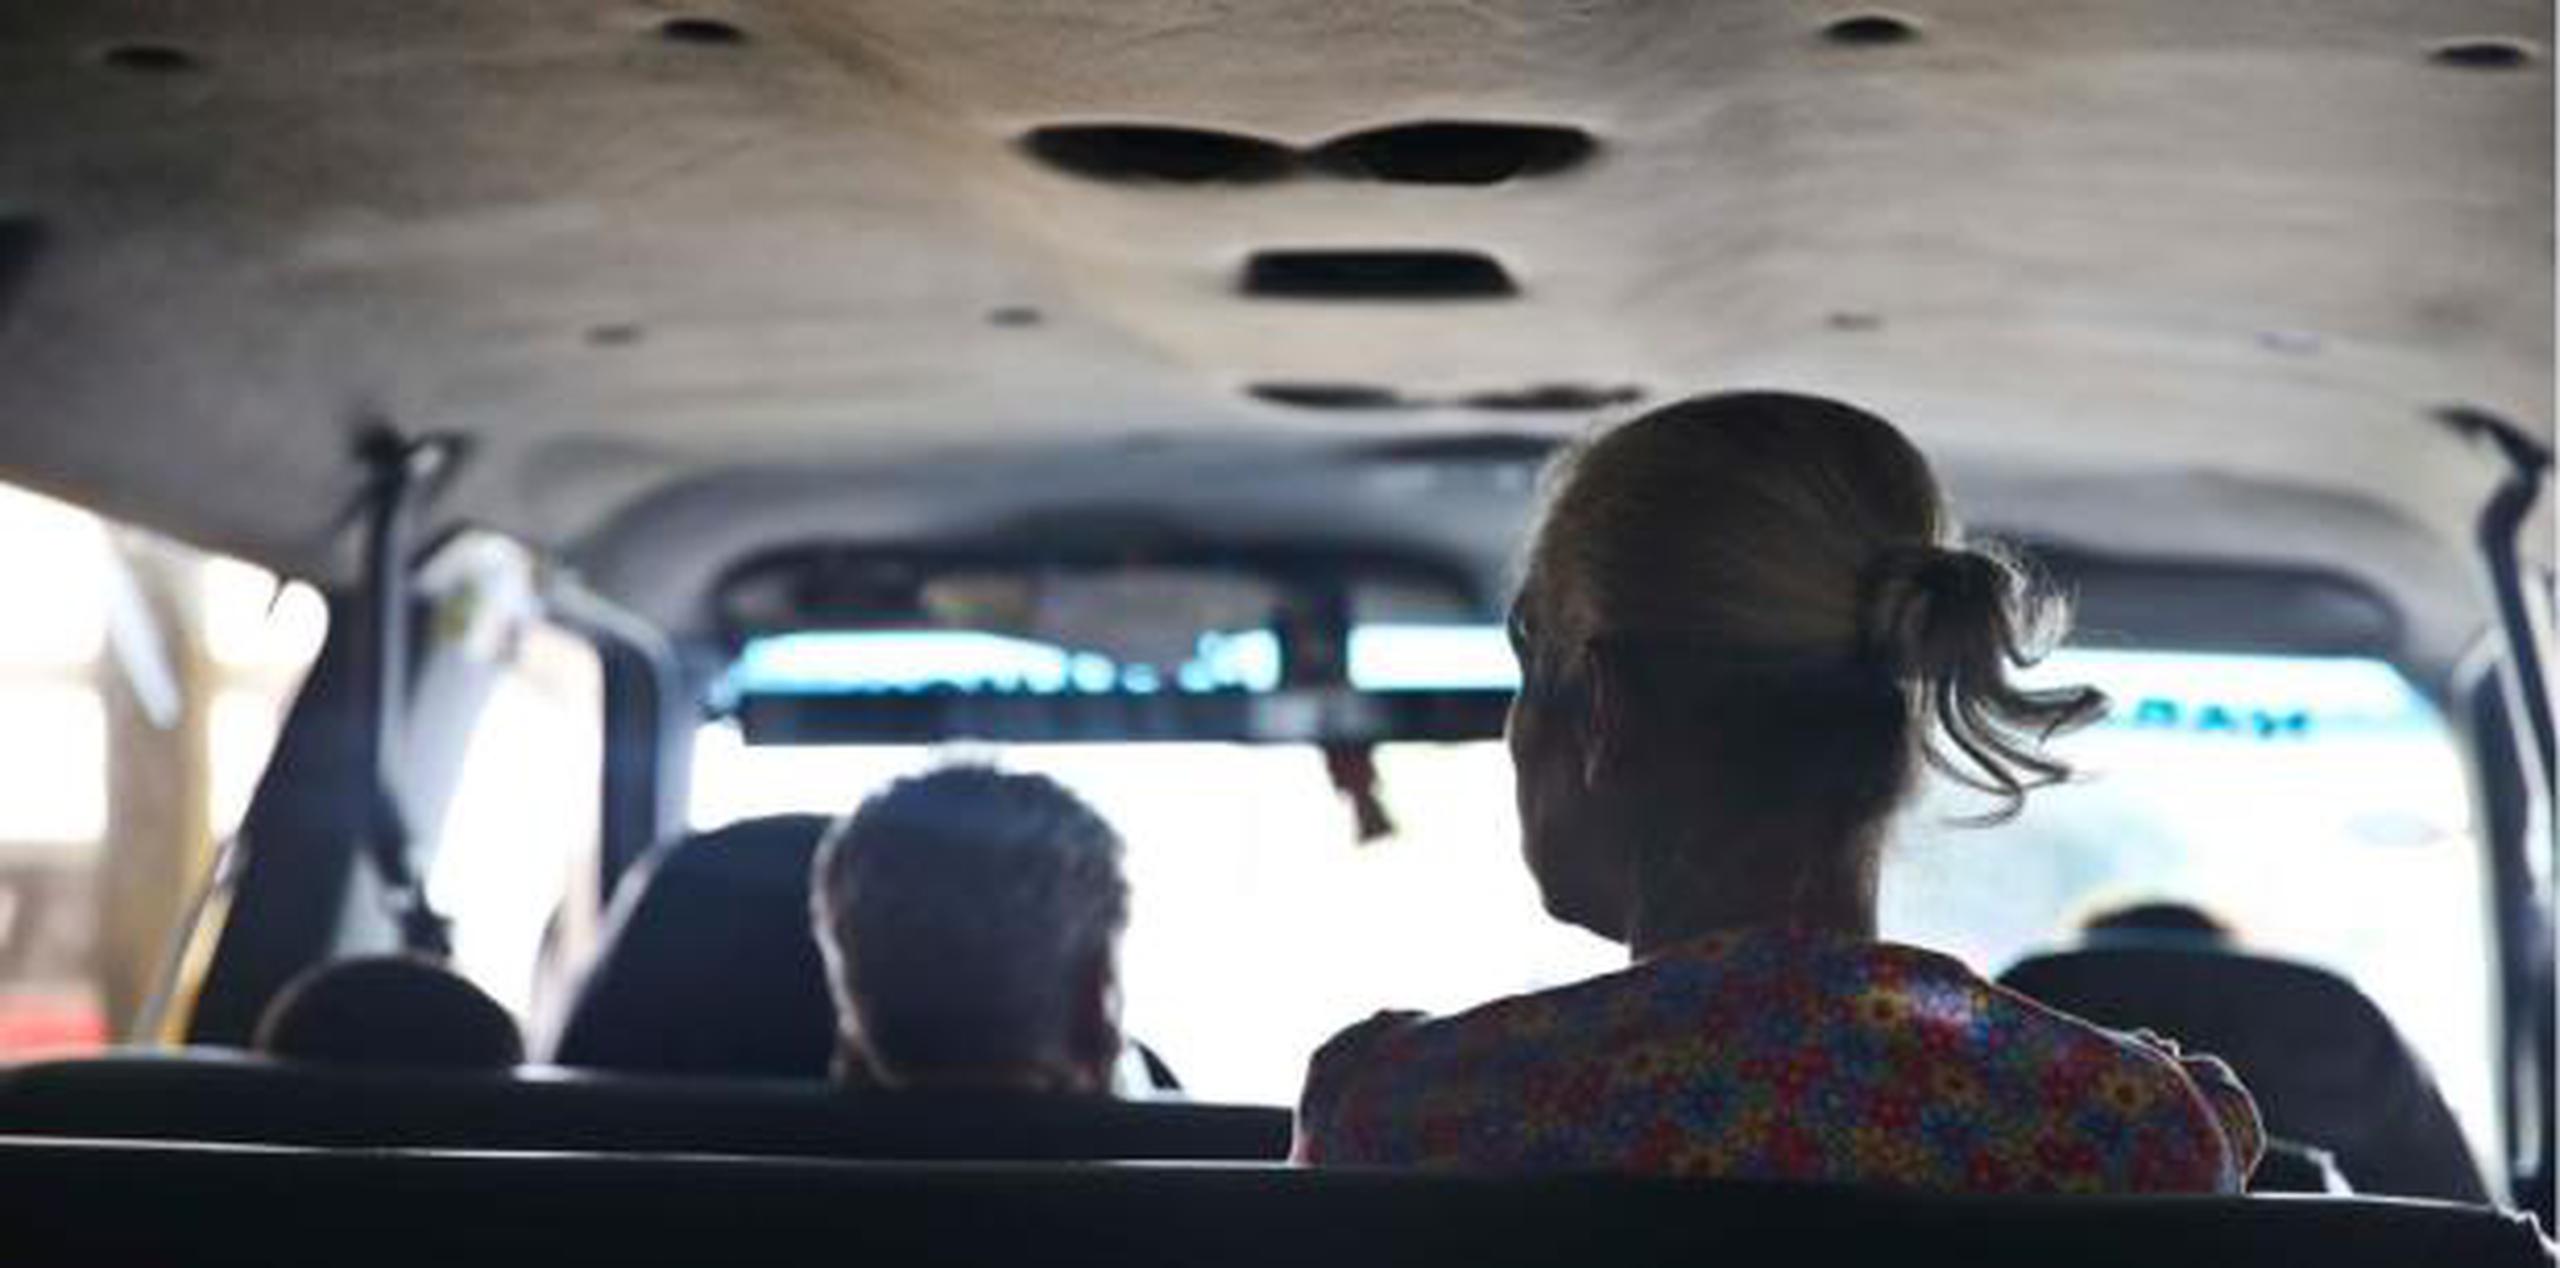 Las tarifas de los carros públicos son un dolor de cabeza y hasta del bolsillo para aquellos que se ven en la necesidad de regresar a Ceiba para tomar la lancha. (Archivo)